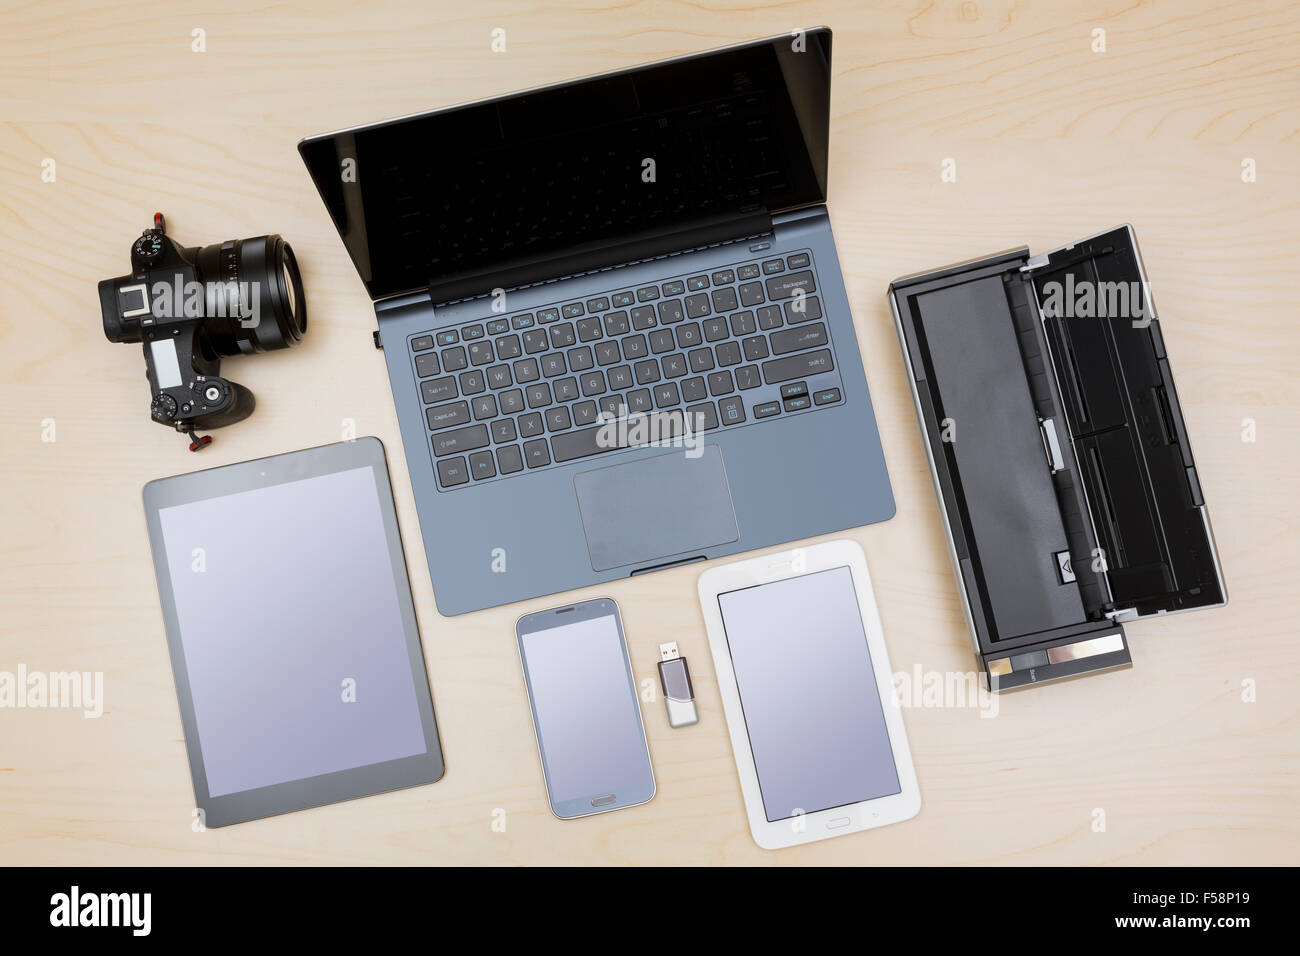 Draufsicht auf digitale Geräte, Geräte oder Apparate - Laptop, Notebook, Kamera, Tablet, Handy, Scanner auf einem Schreibtisch Stockfoto